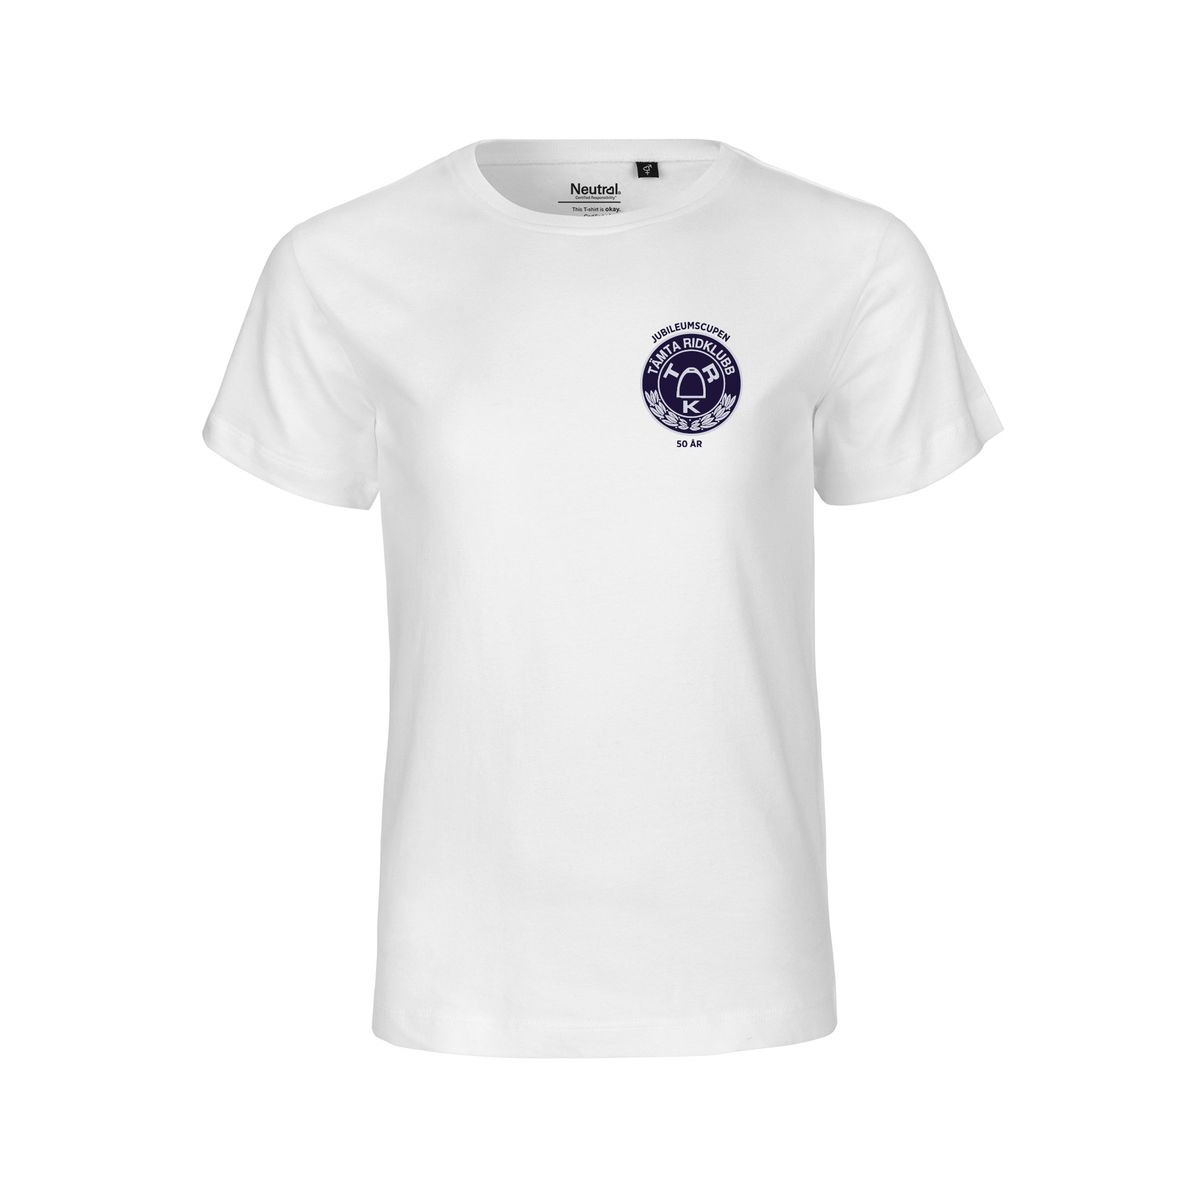 Tämta Ridklubb T-shirt Unisex